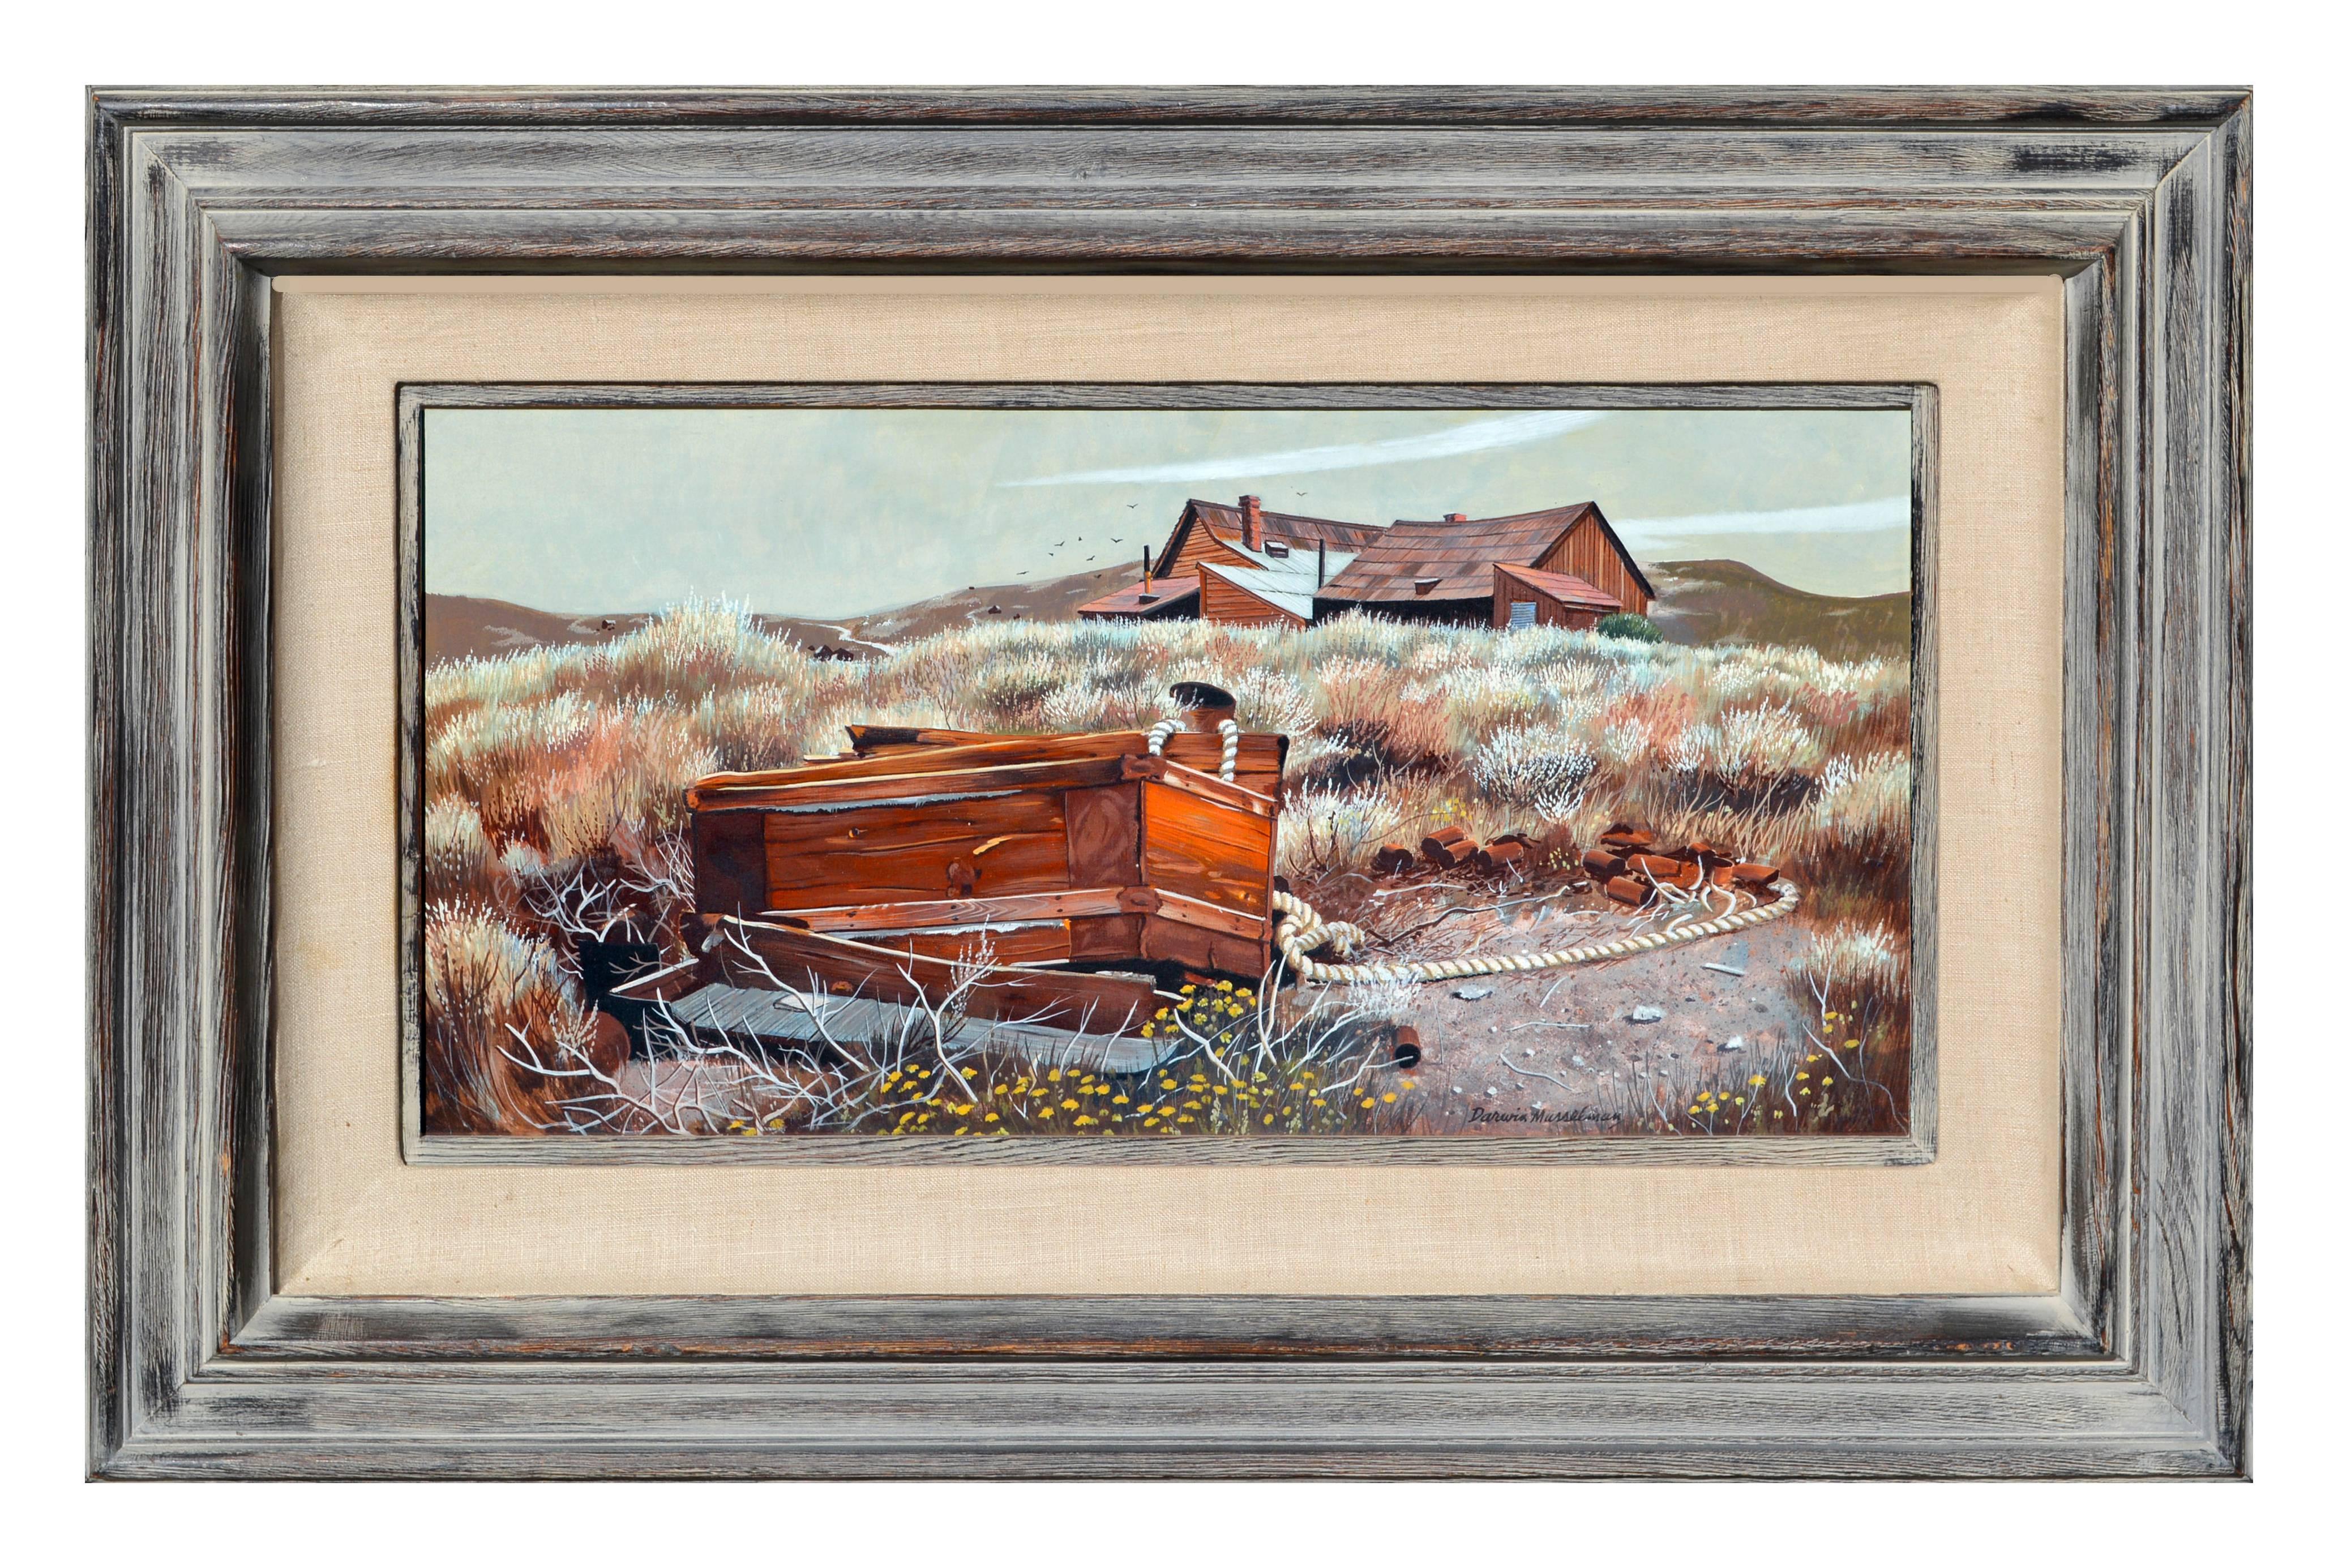 Landscape Painting Darwin Musselman - Paysage pastoral vintage -  The Old Trunk, Bodie  (Le vieux tronc, le corps) 